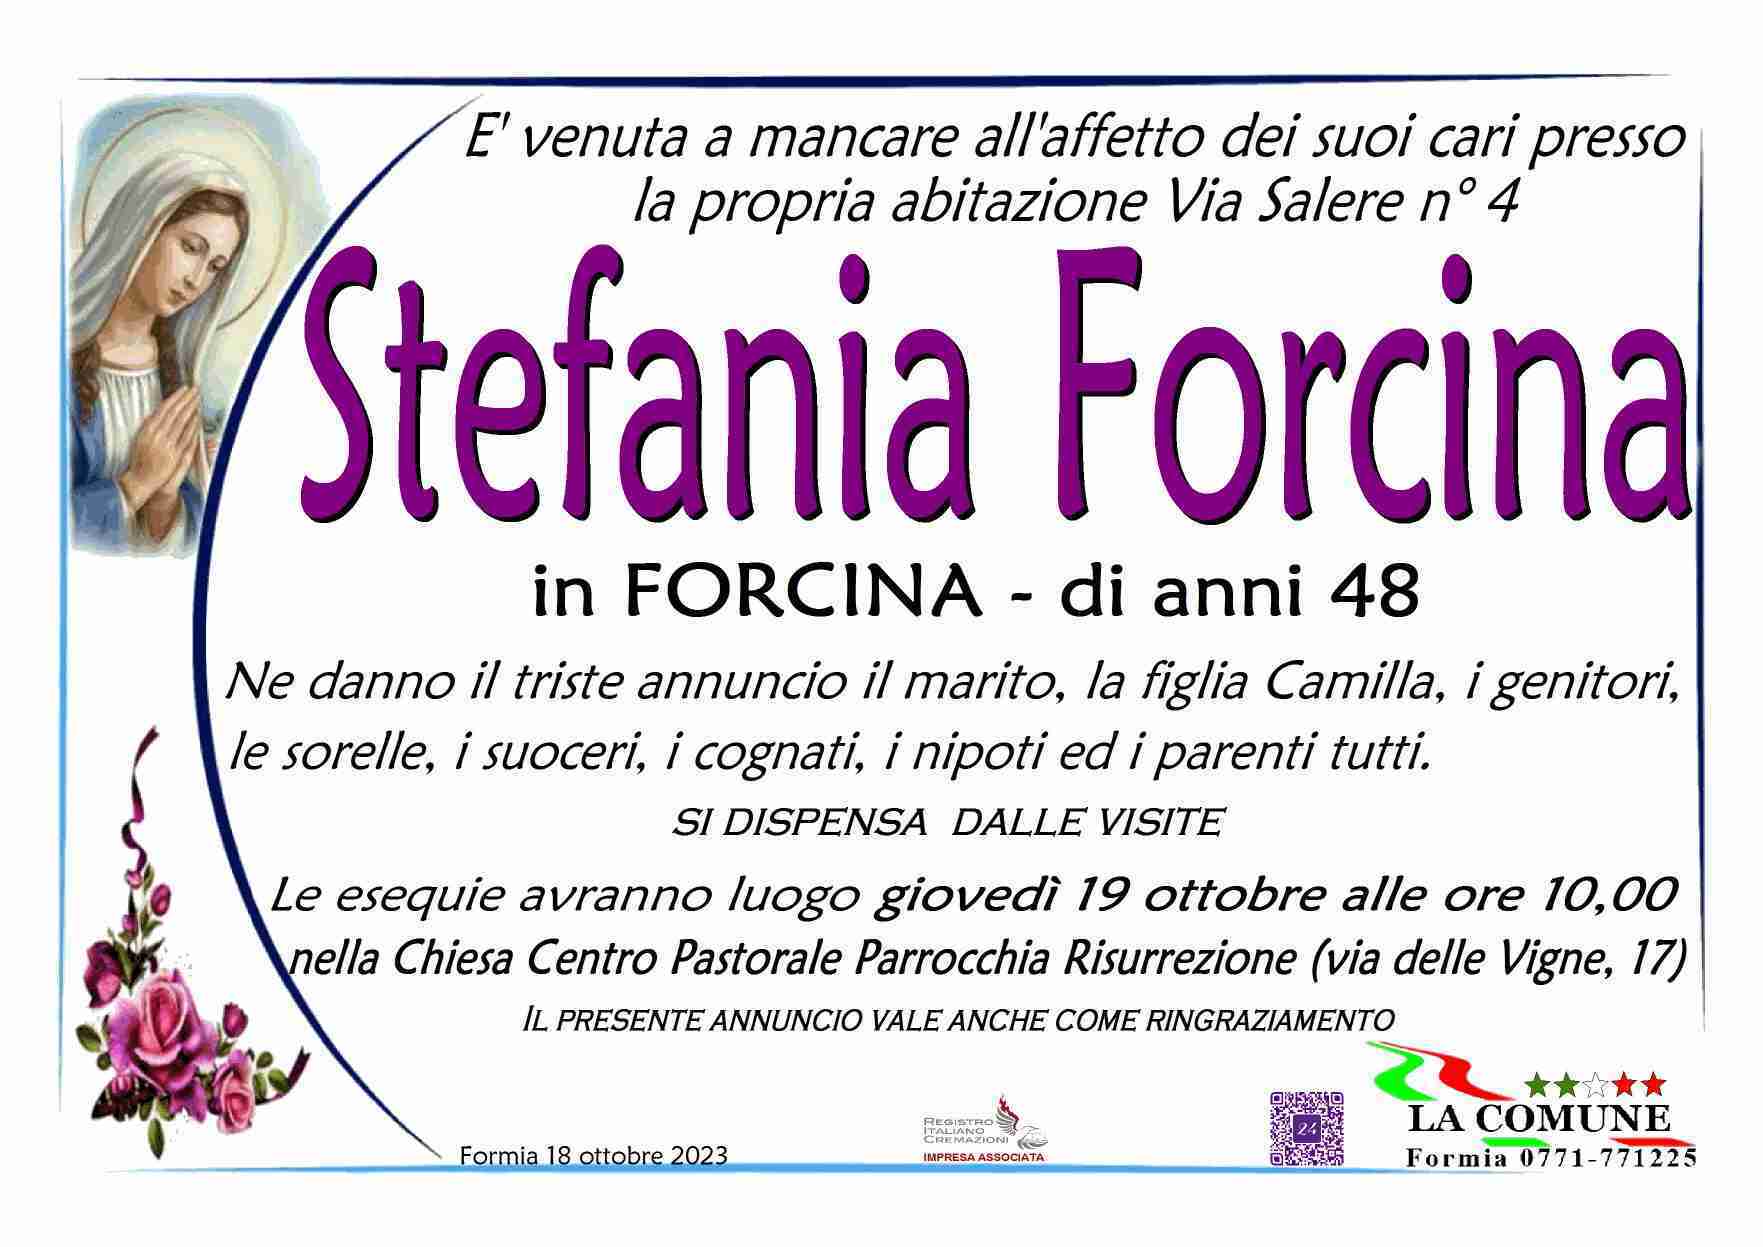 Stefania Forcina